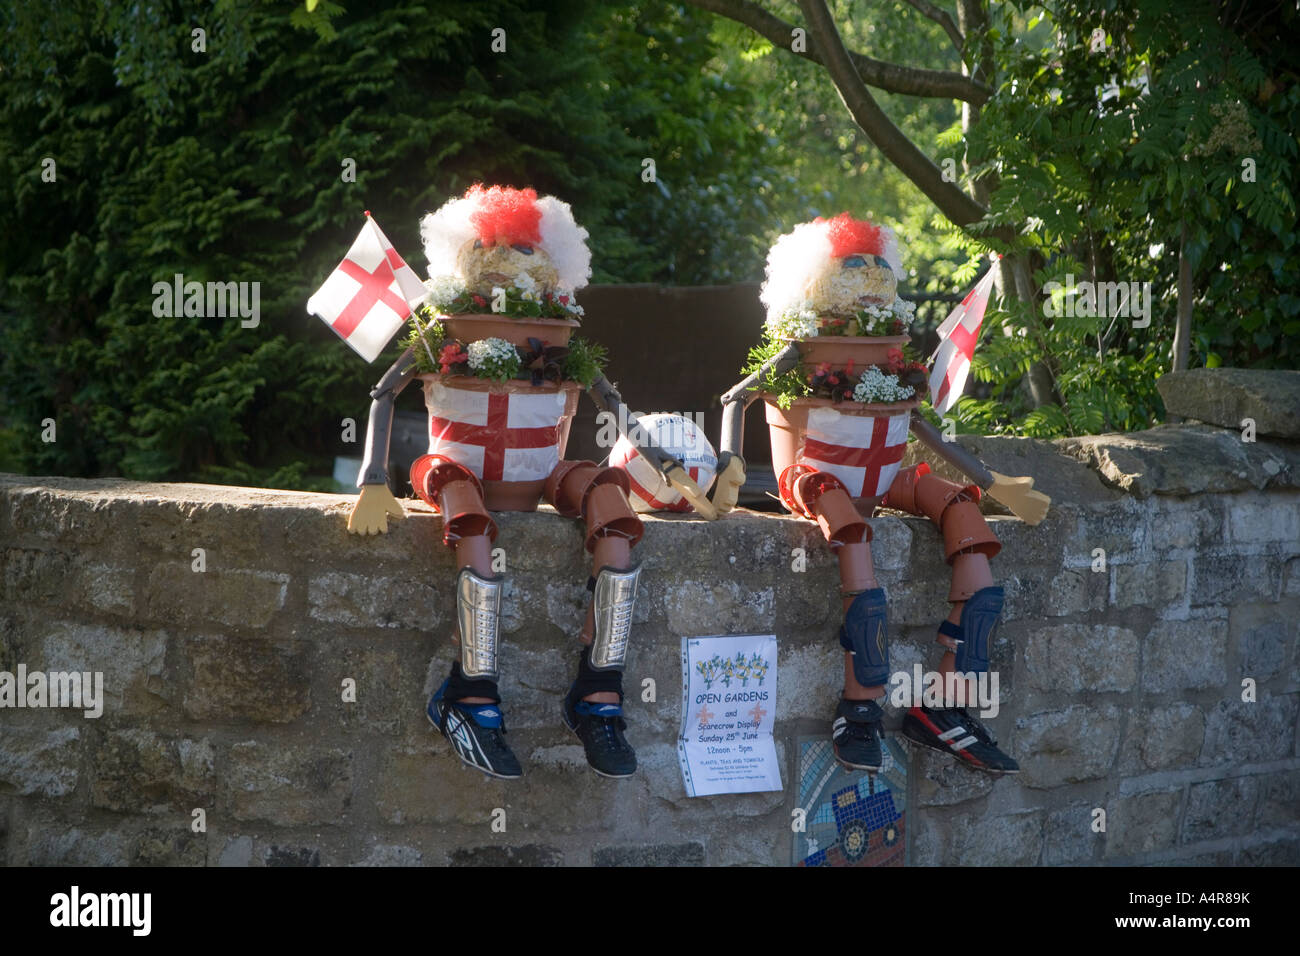 Modèles de Bill et Ben le pot de fleurs hommes habillés et en Angleterre les supporters de football ont siégé en un mur de jardin Wass Angleterre Yorkshire UK Banque D'Images